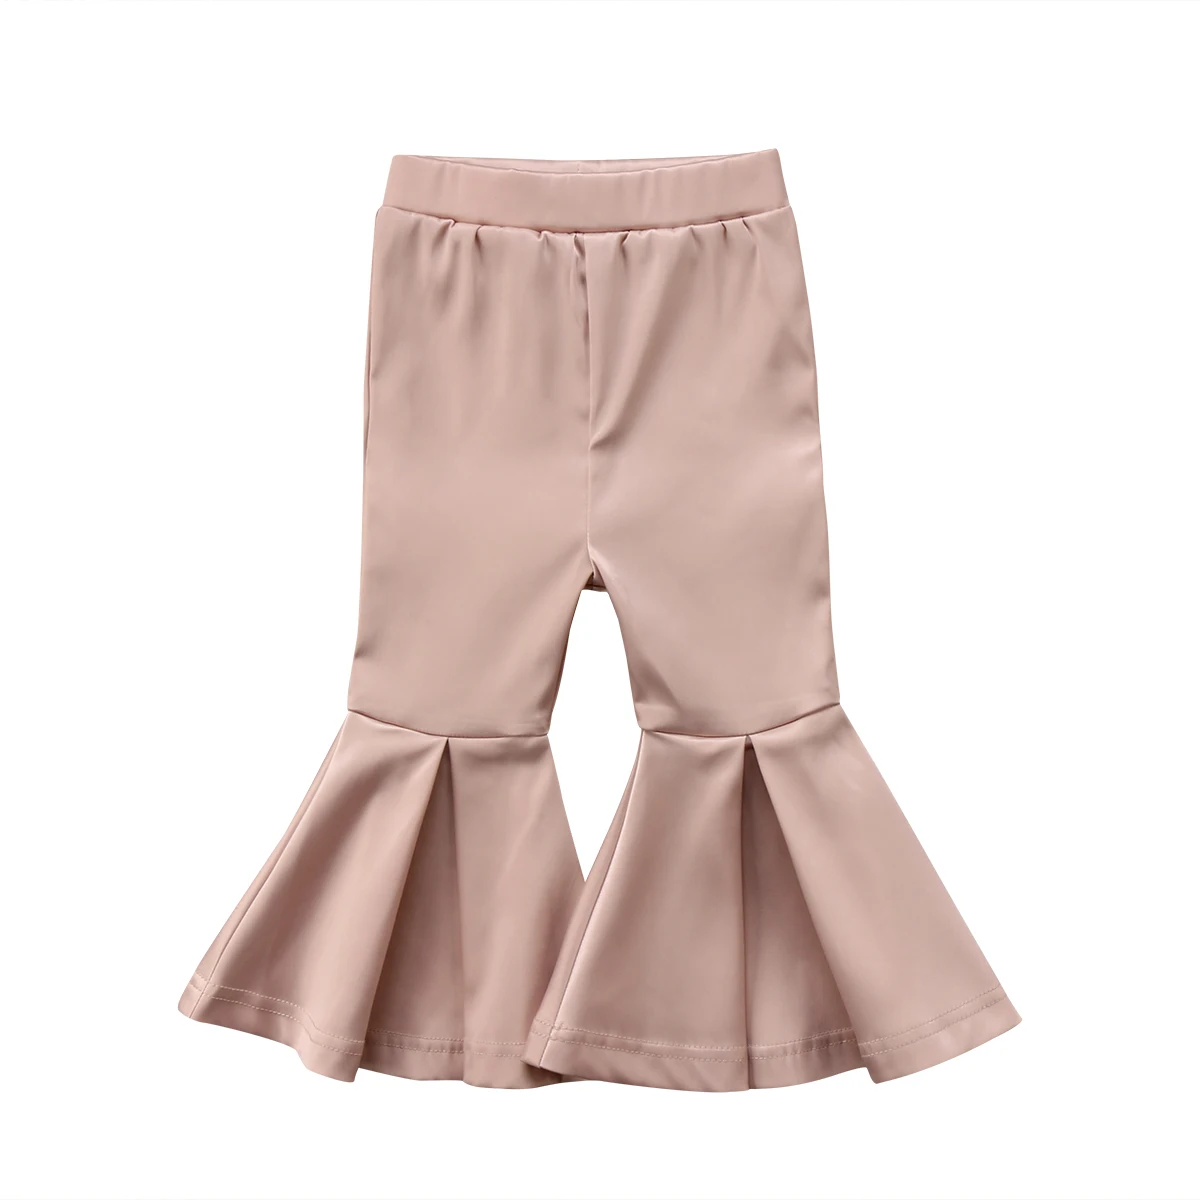 PUDCOCO/новейшие детские леггинсы для маленьких девочек, эластичные длинные расклешенные штаны с высокой талией, От 2 до 7 лет - Цвет: Золотой